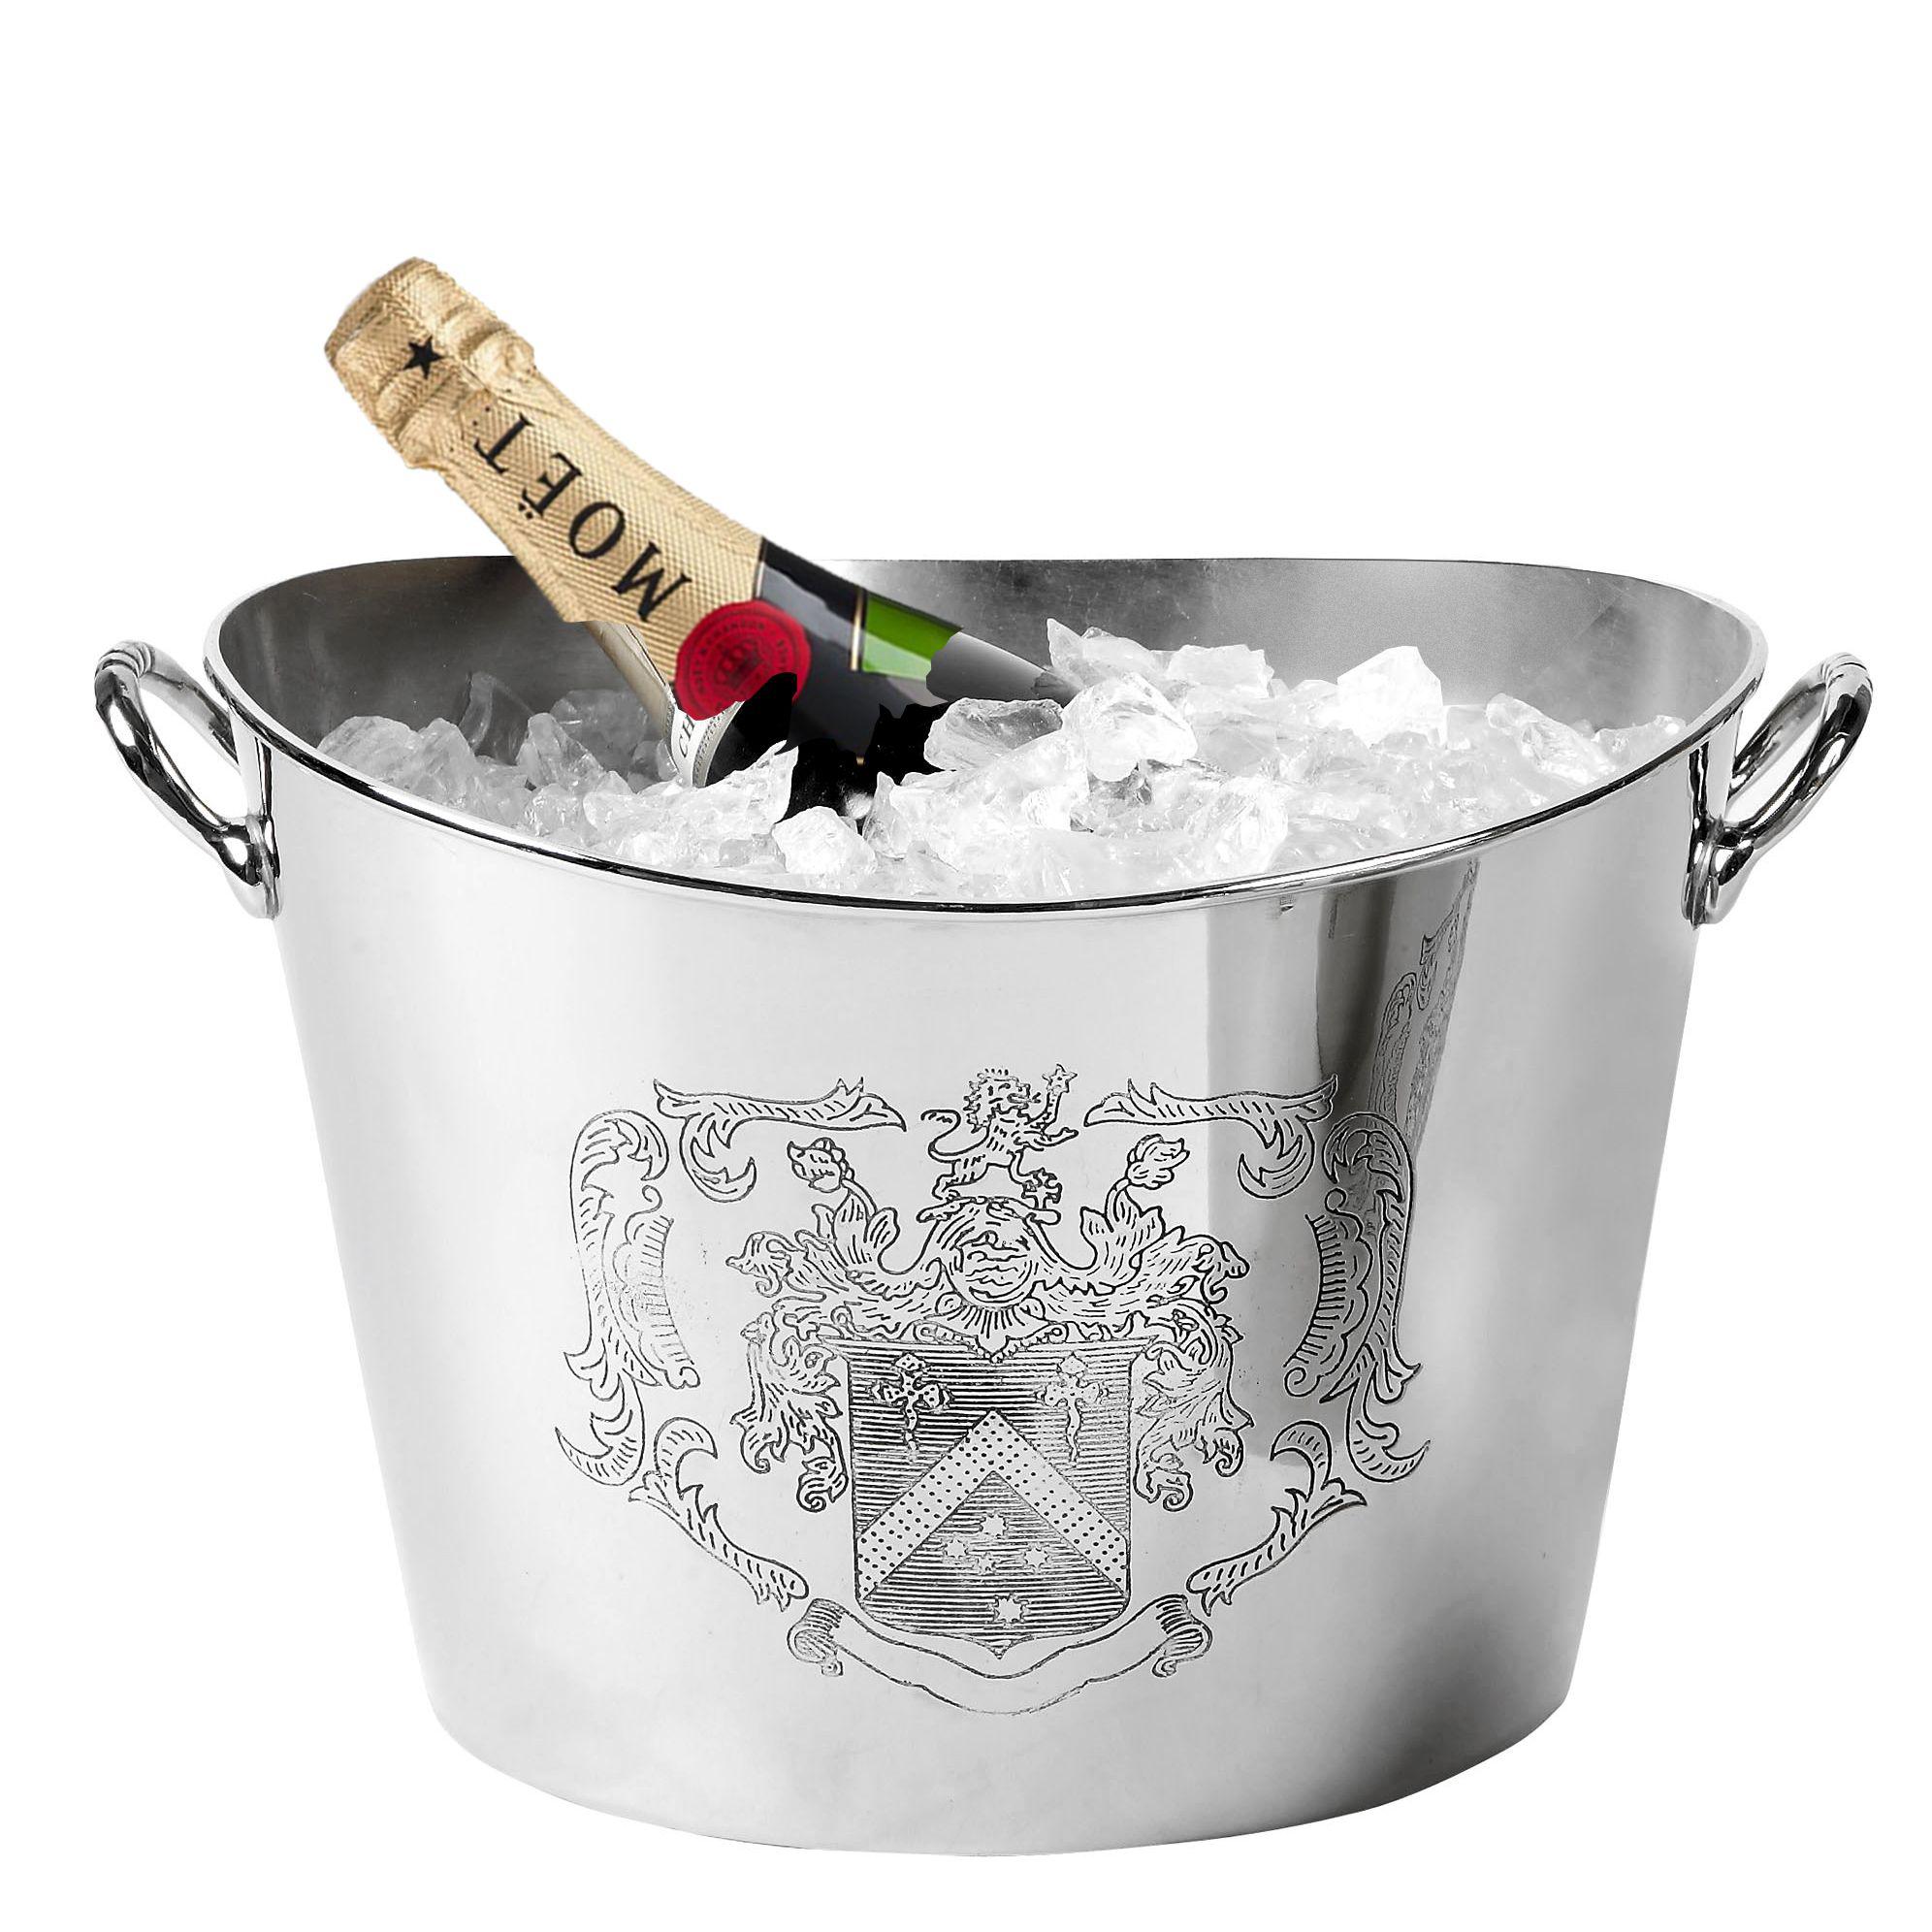 Купить Ведро для охлаждения вина Champagne Cooler Maggia в интернет-магазине roooms.ru